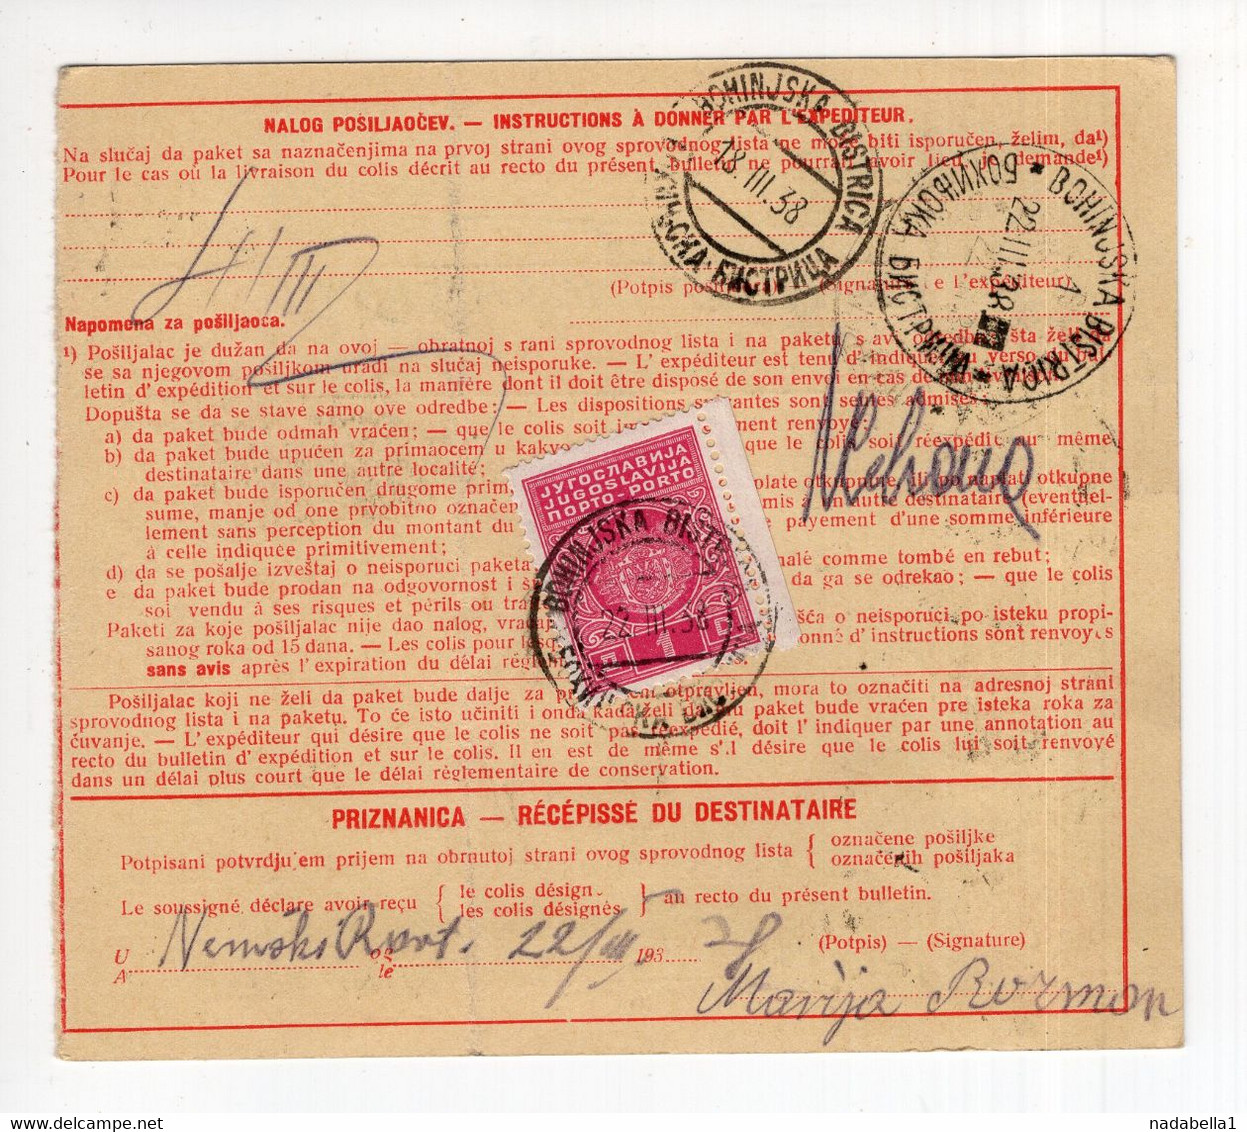 1938. KINGDOM OF YUGOSLAVIA,SLOVENIA,LJUBLJANA,PARCEL CARD,POSTAGE DUE AT BOHINJSKA BISTRICA - Timbres-taxe